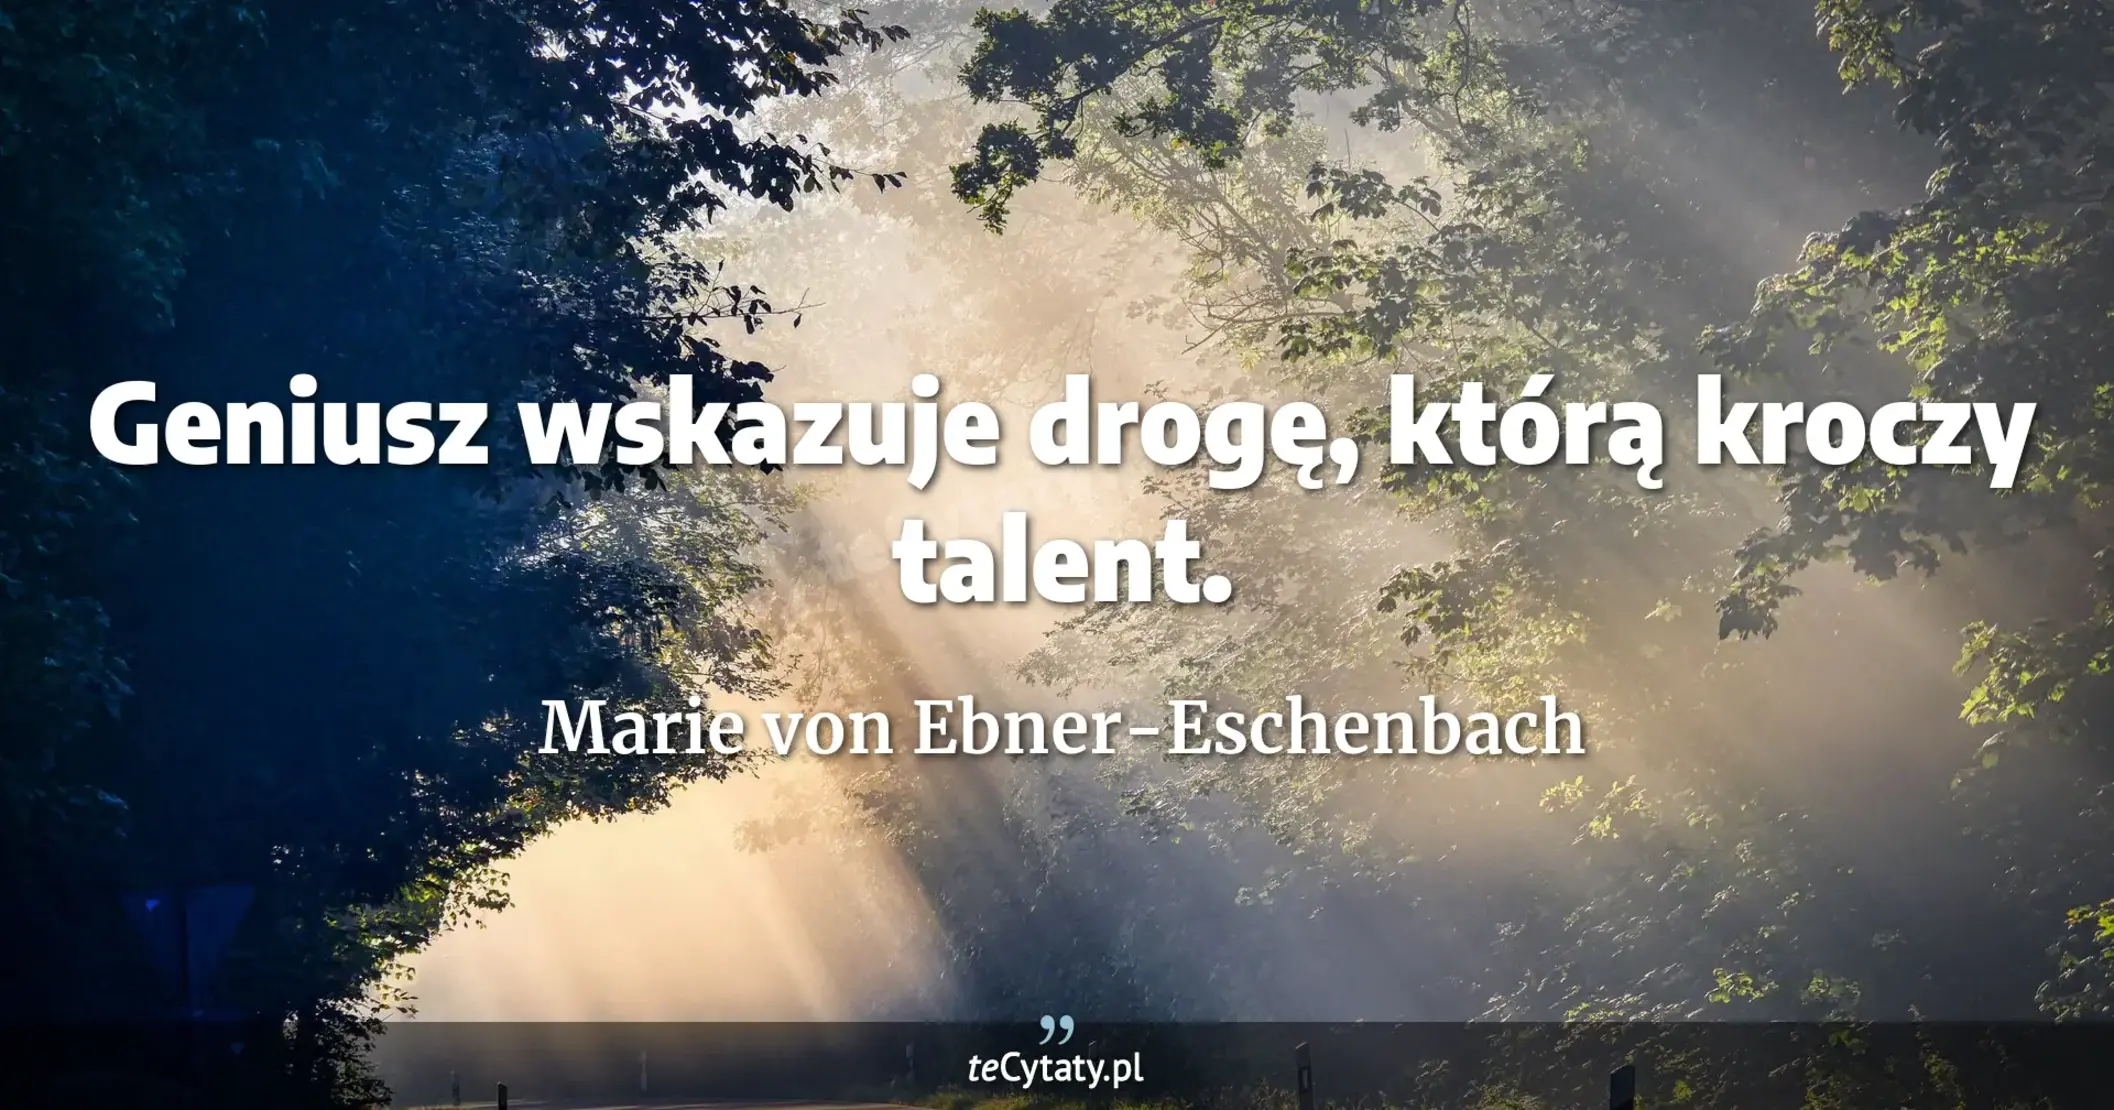 Geniusz wskazuje drogę, którą kroczy talent. - Marie von Ebner-Eschenbach